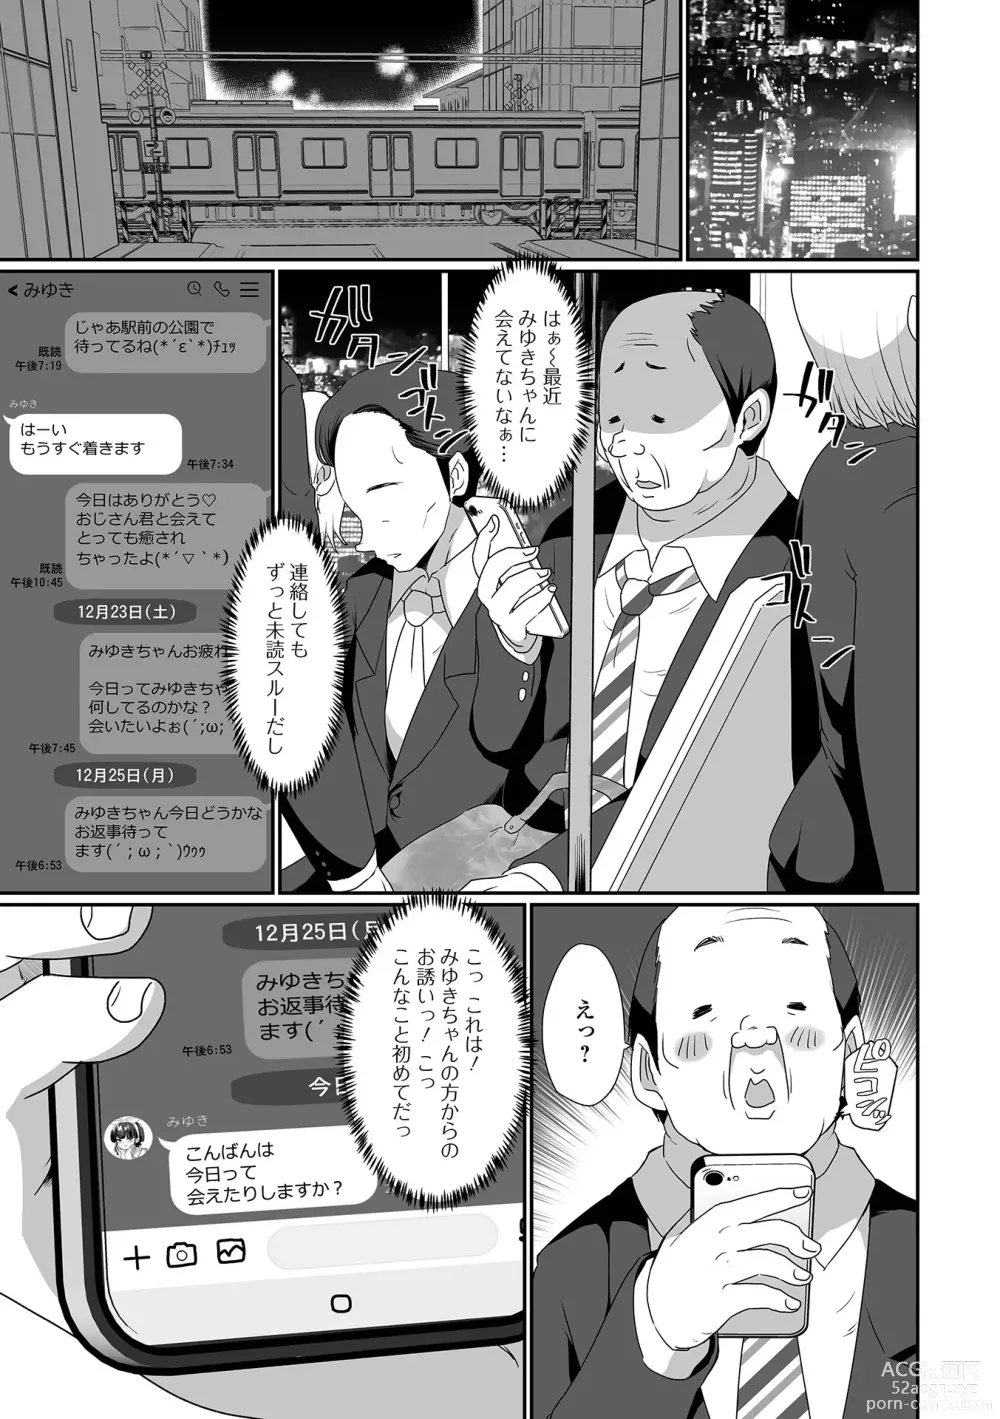 Page 7 of manga Gekkan Web Otoko no Ko-llection! S Vol. 92